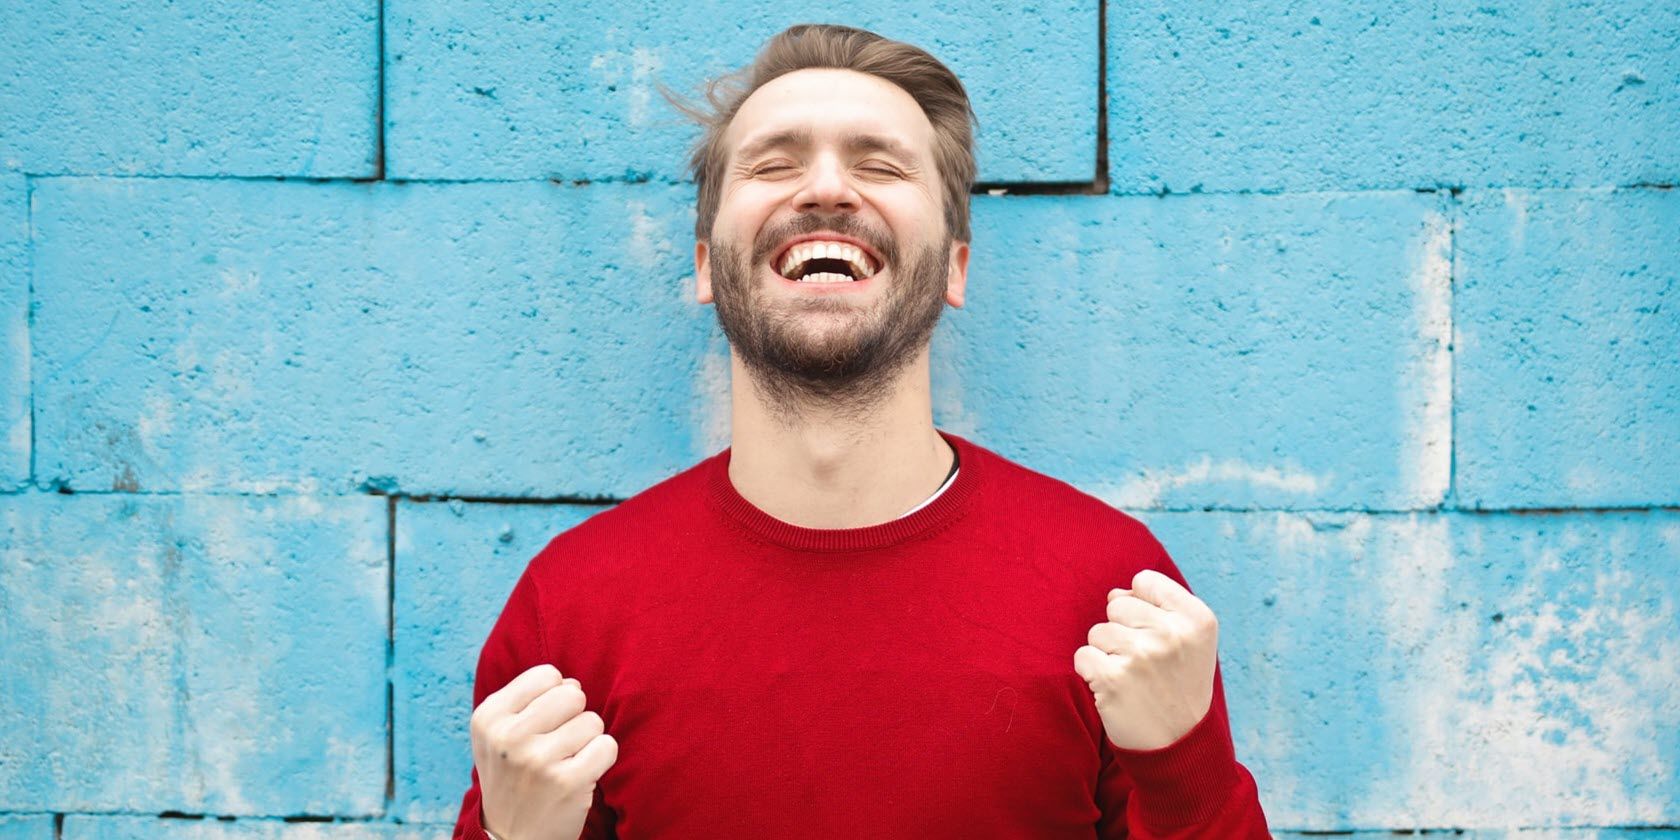 smiling man in red shirt